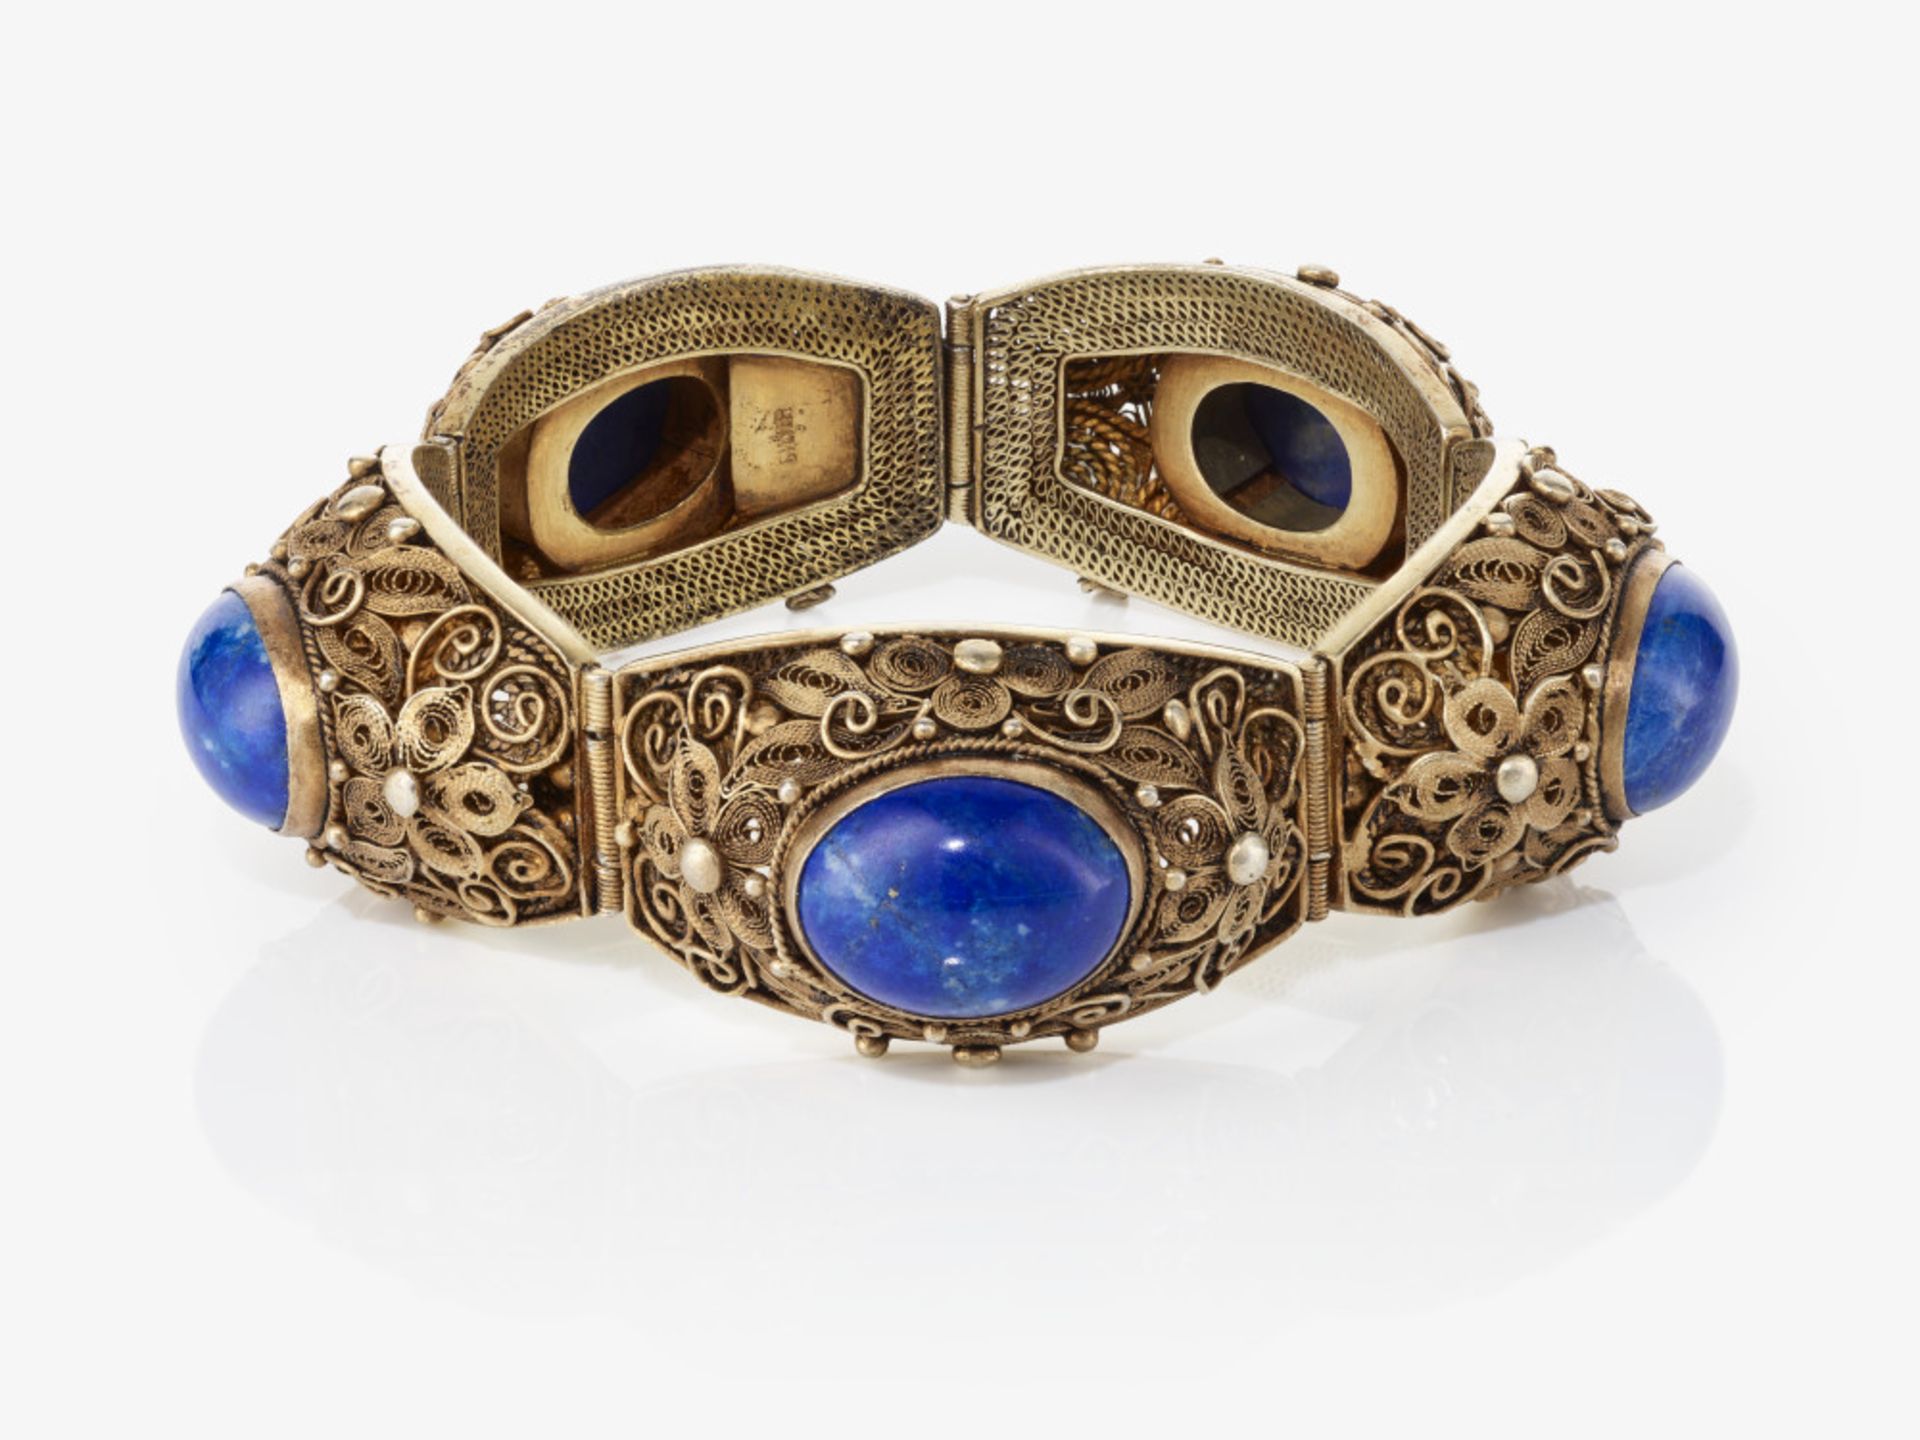 Kette, Armband, Brosche, ein Paar Ohrclips und zwei Ringe mit Lapislazuli und Email - China, überwie - Bild 2 aus 6